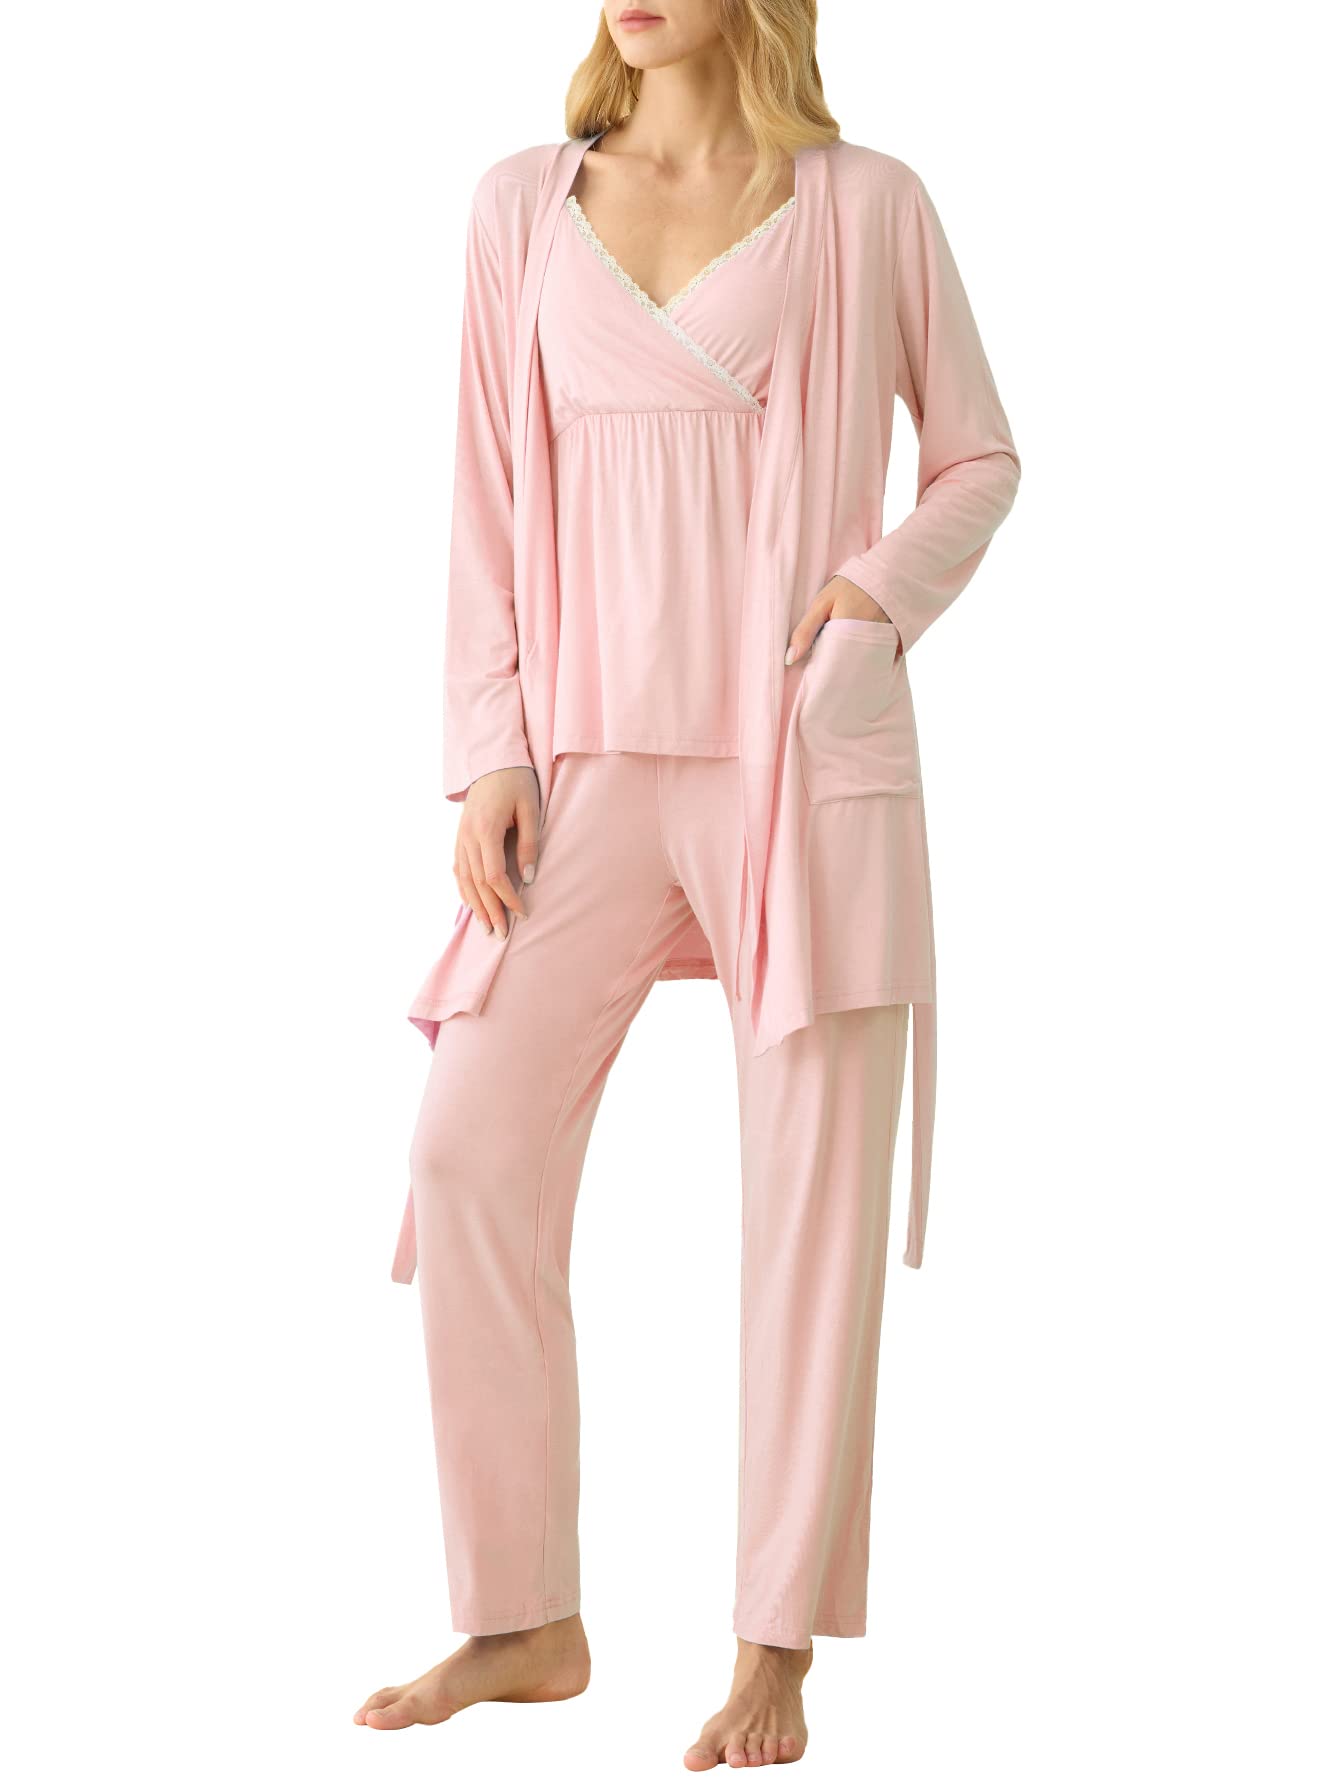 Women's Bamboo Viscose 3 Piece Nursing Pajama Set with Robe